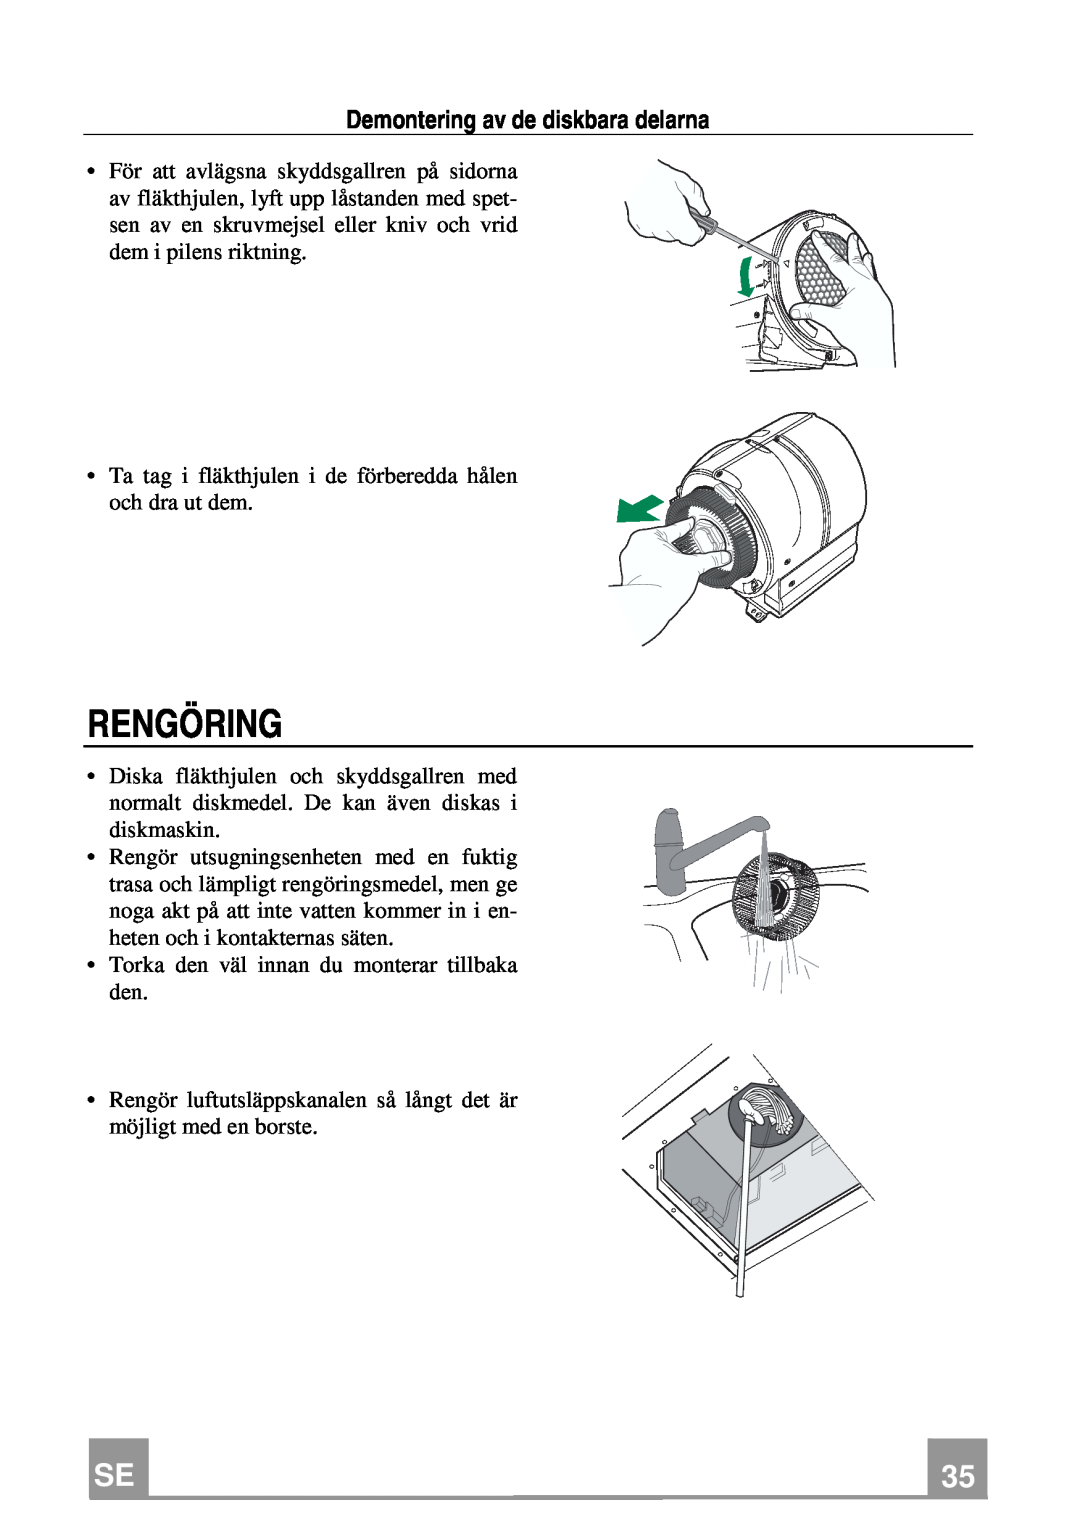 Franke Consumer Products FCH 906 XS ECS manual Rengöring, Demontering av de diskbara delarna 